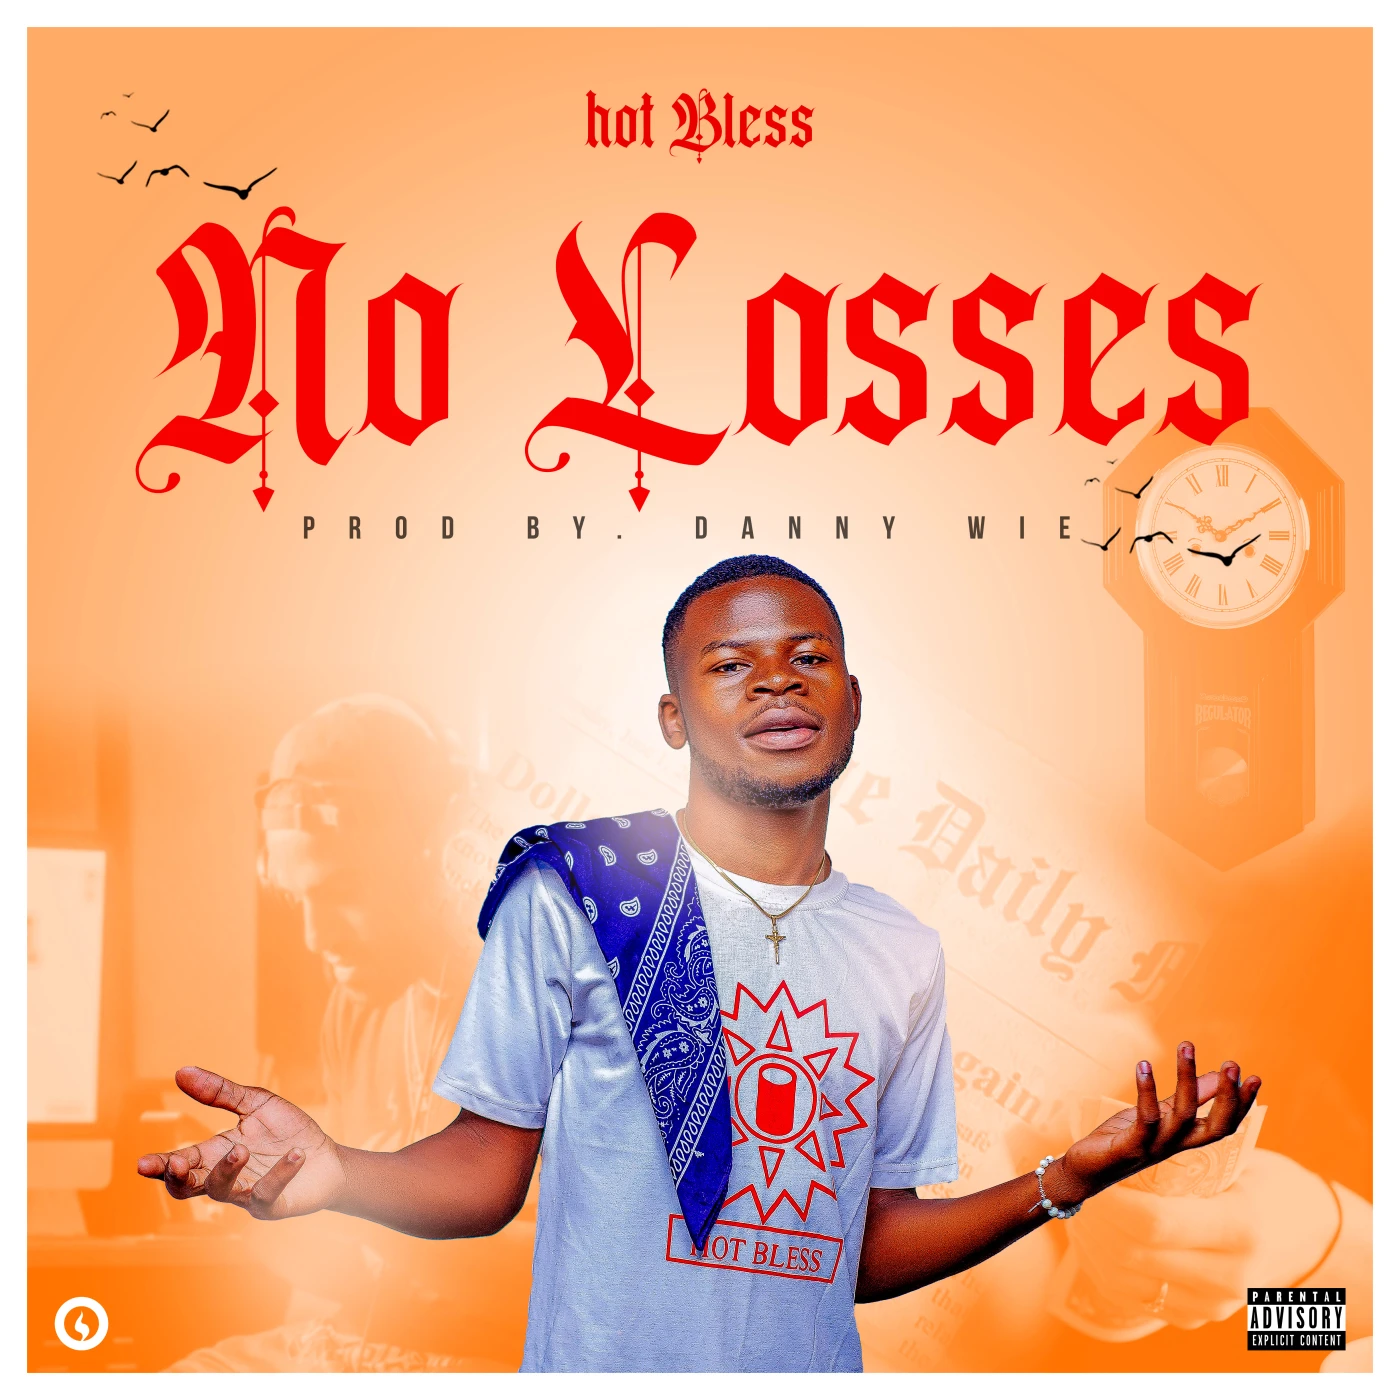 no-losses-hot-bless-hot-bless-Just Malawi Music